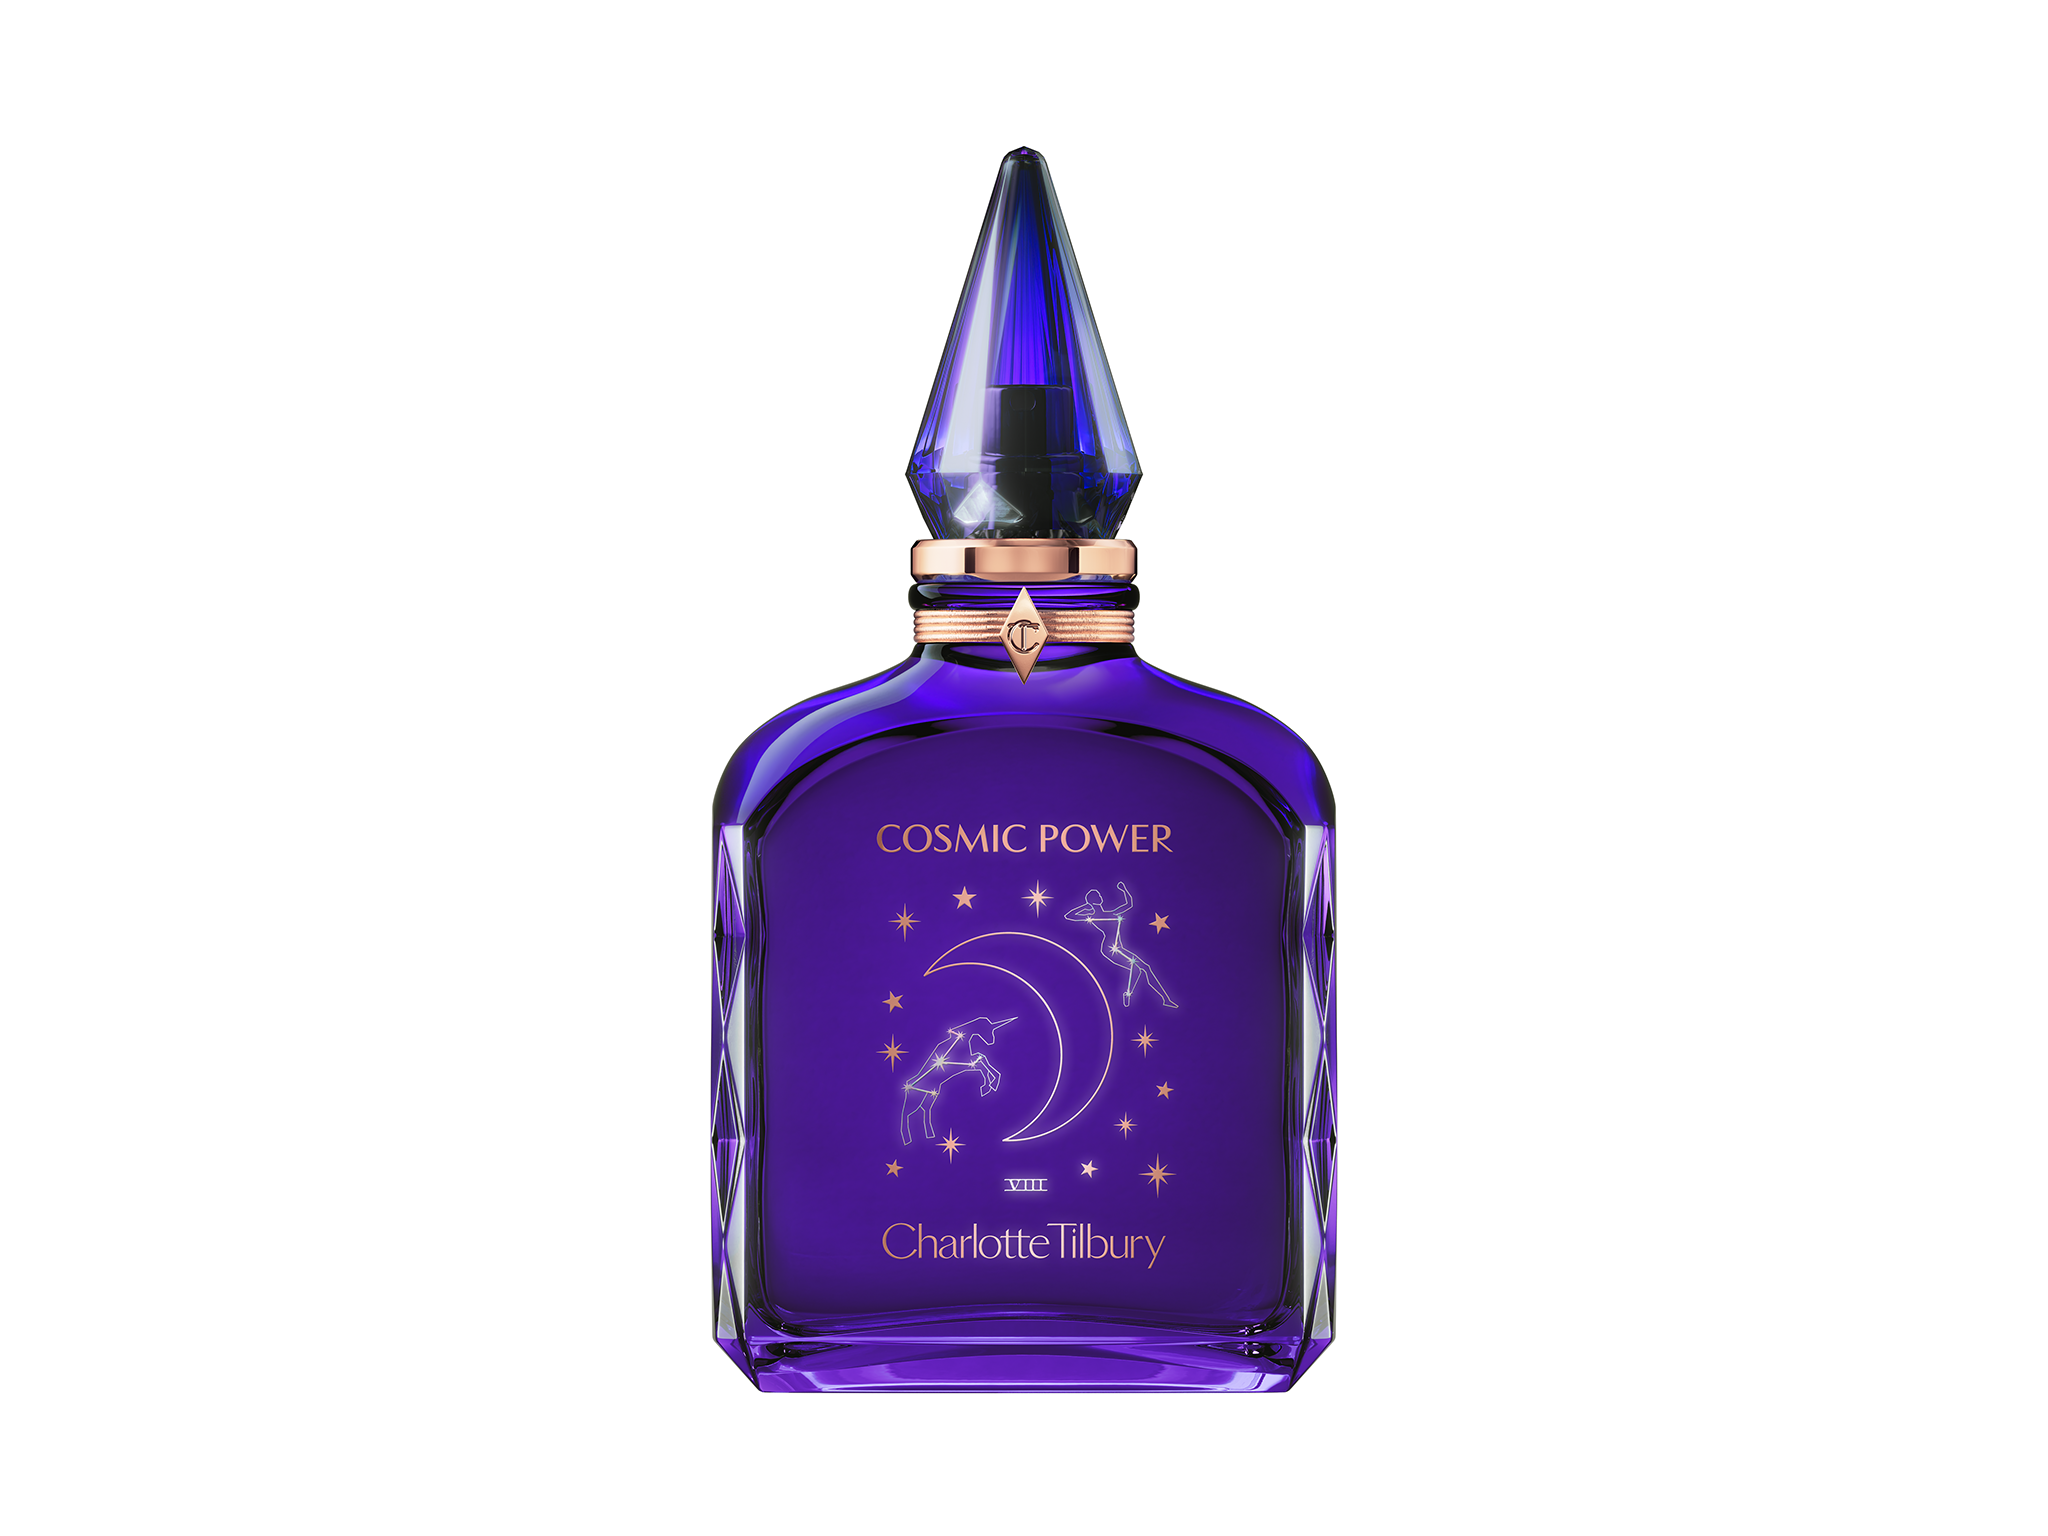 Charlotte Tilbury cosmic power eau de parfum indybest review 